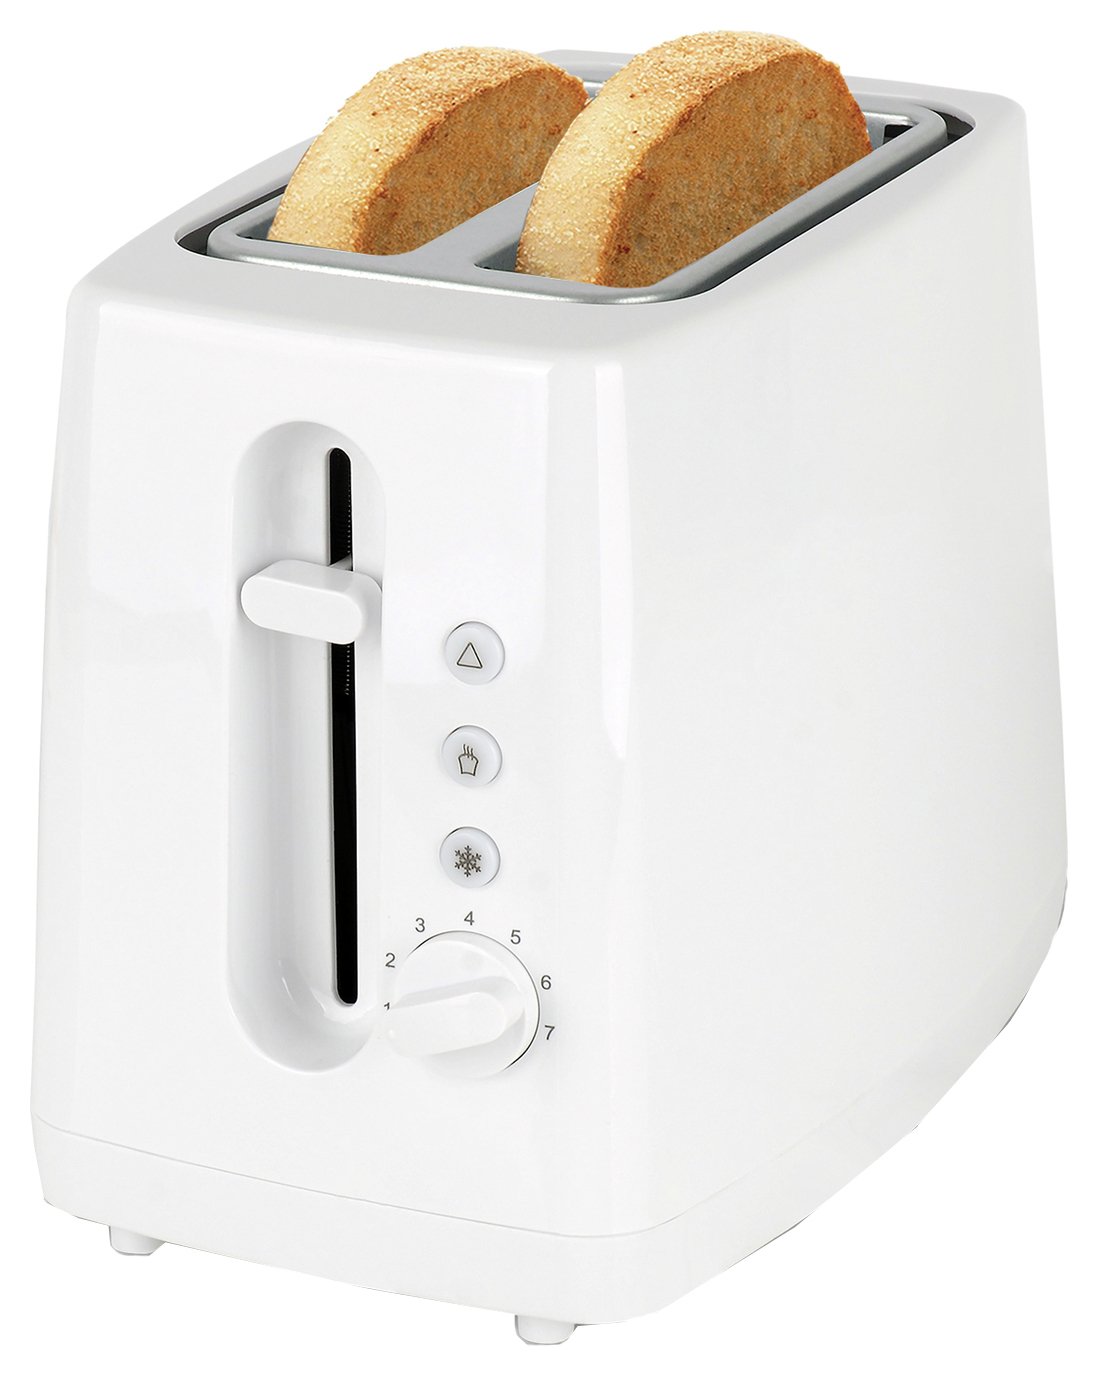 Cookworks New Basic 2 Slice Toaster - White